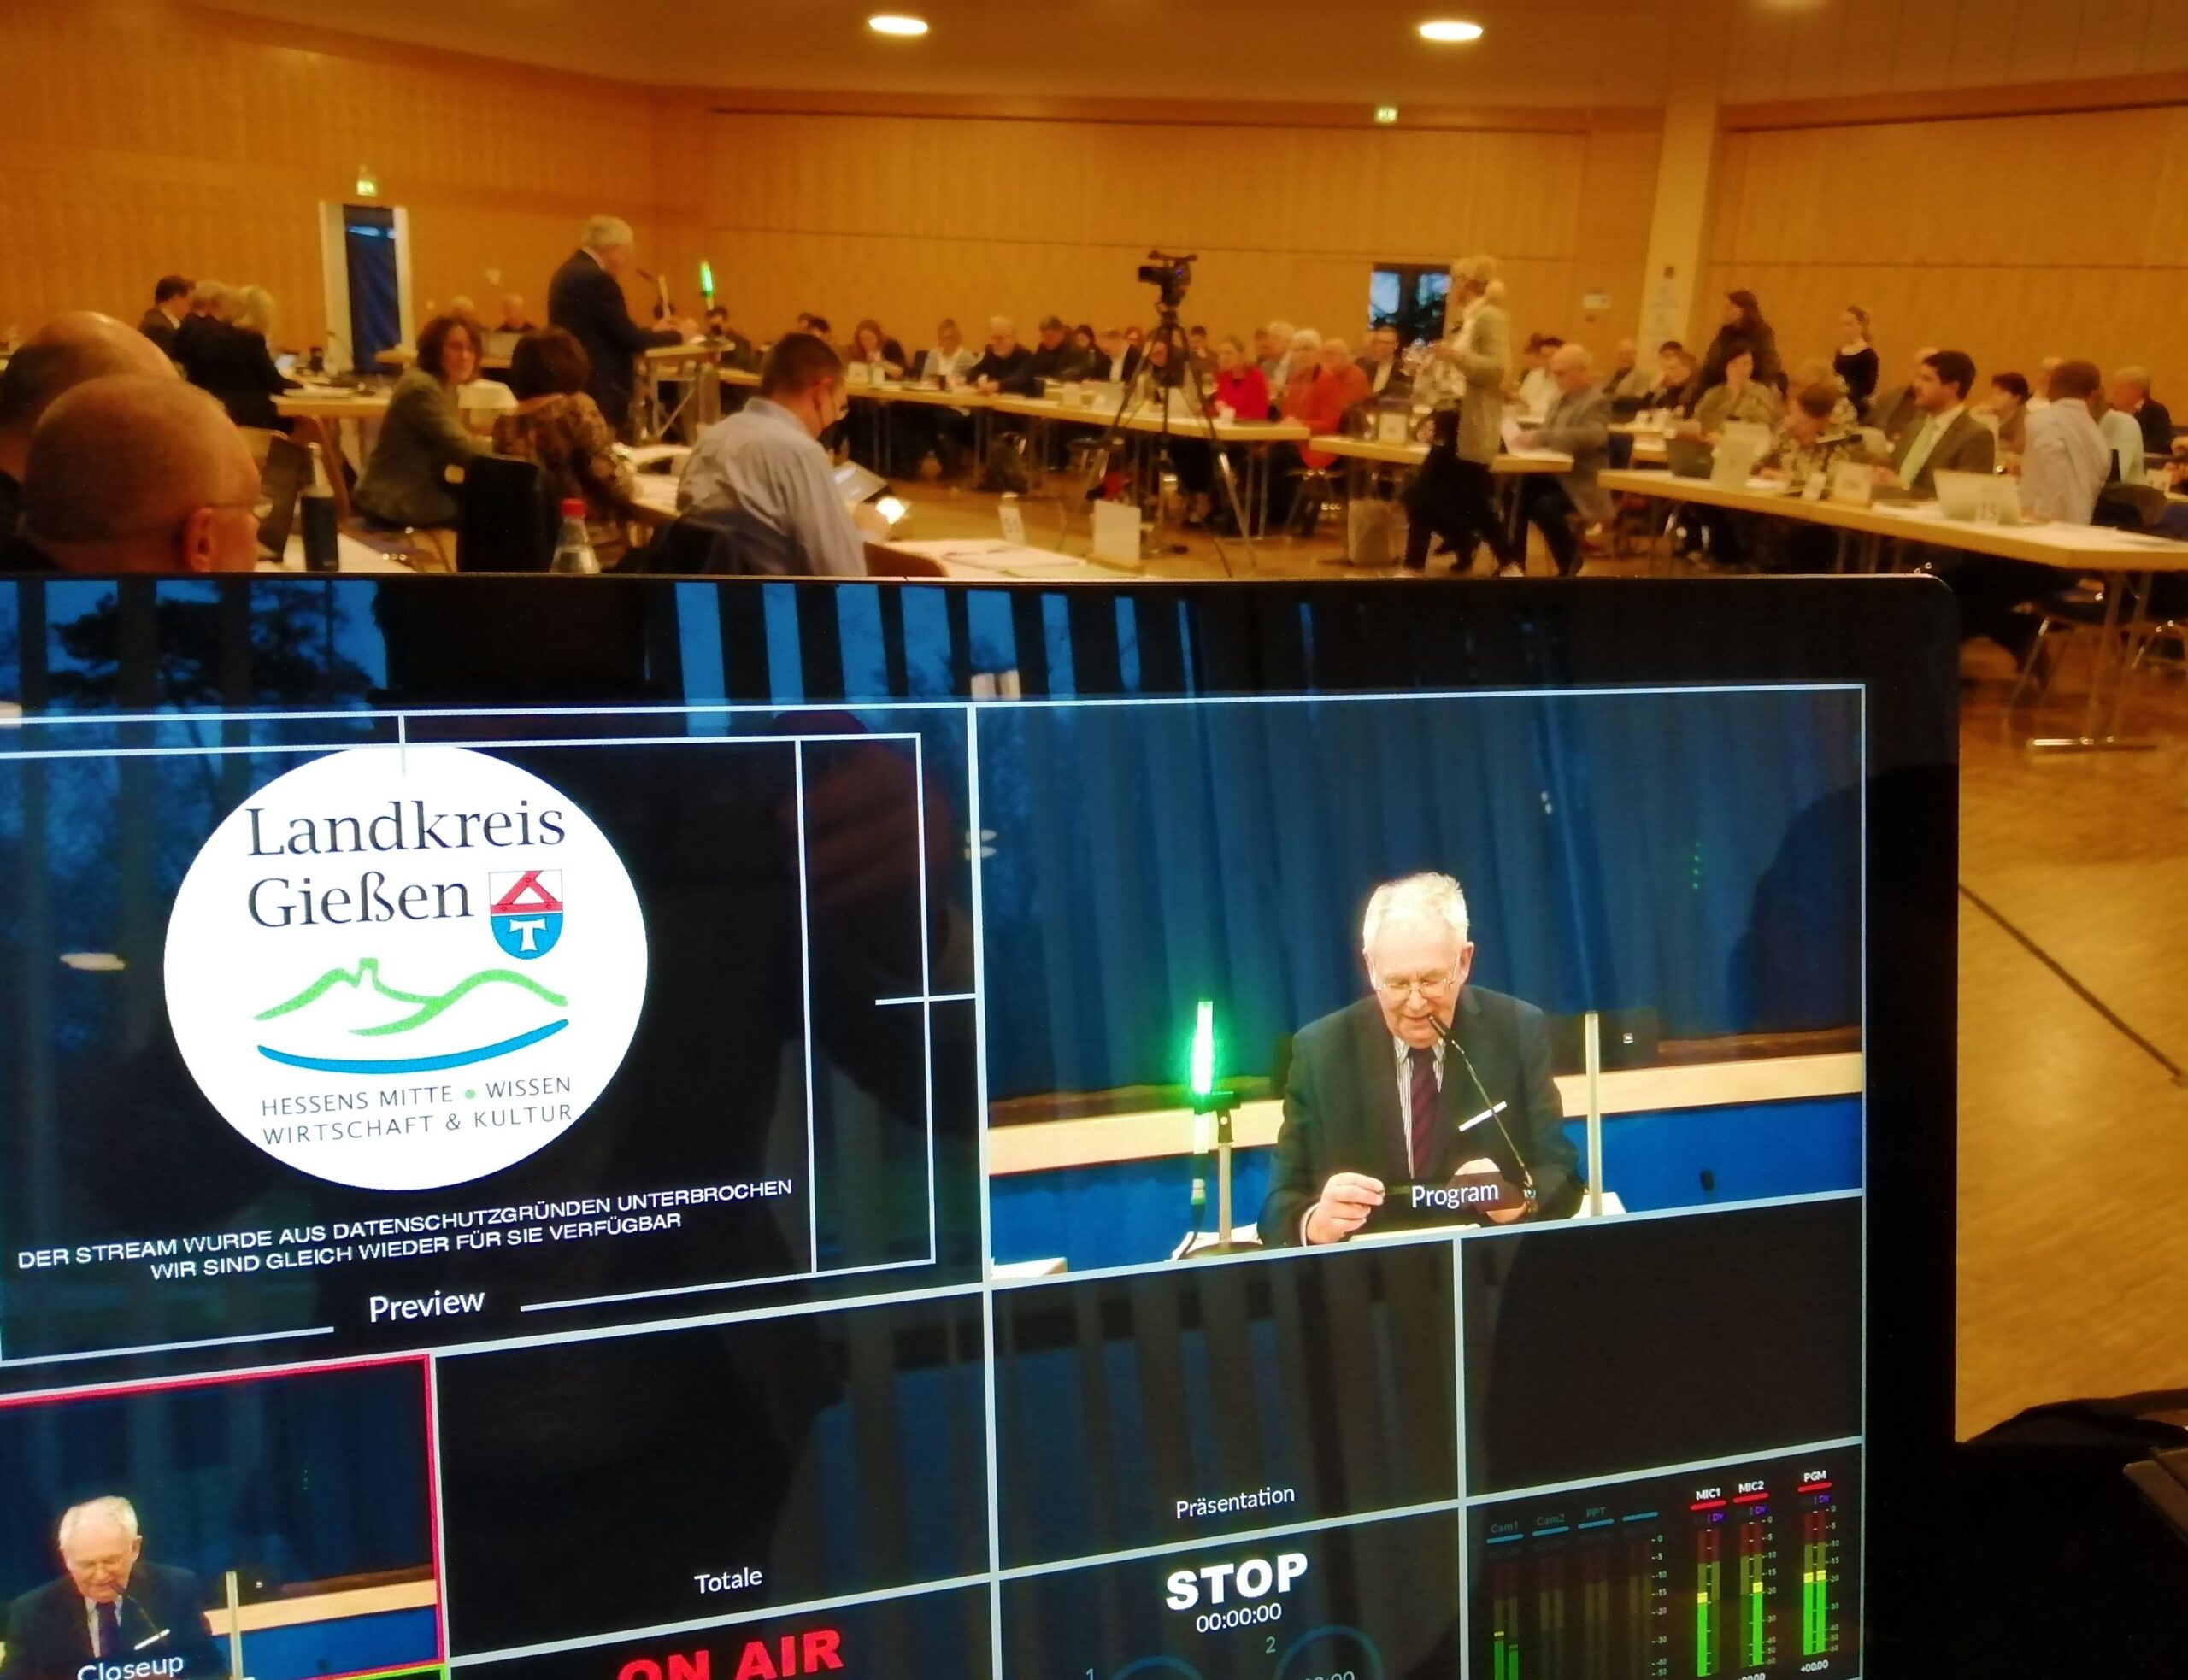 Ein Bildschirm, auf dem eine Person am Mikrofon zu sehen ist. Daneben ist das Landkreis-Gießen-Logo eingeblendet. Im Hintergrud sitzen Personen an Tischen.